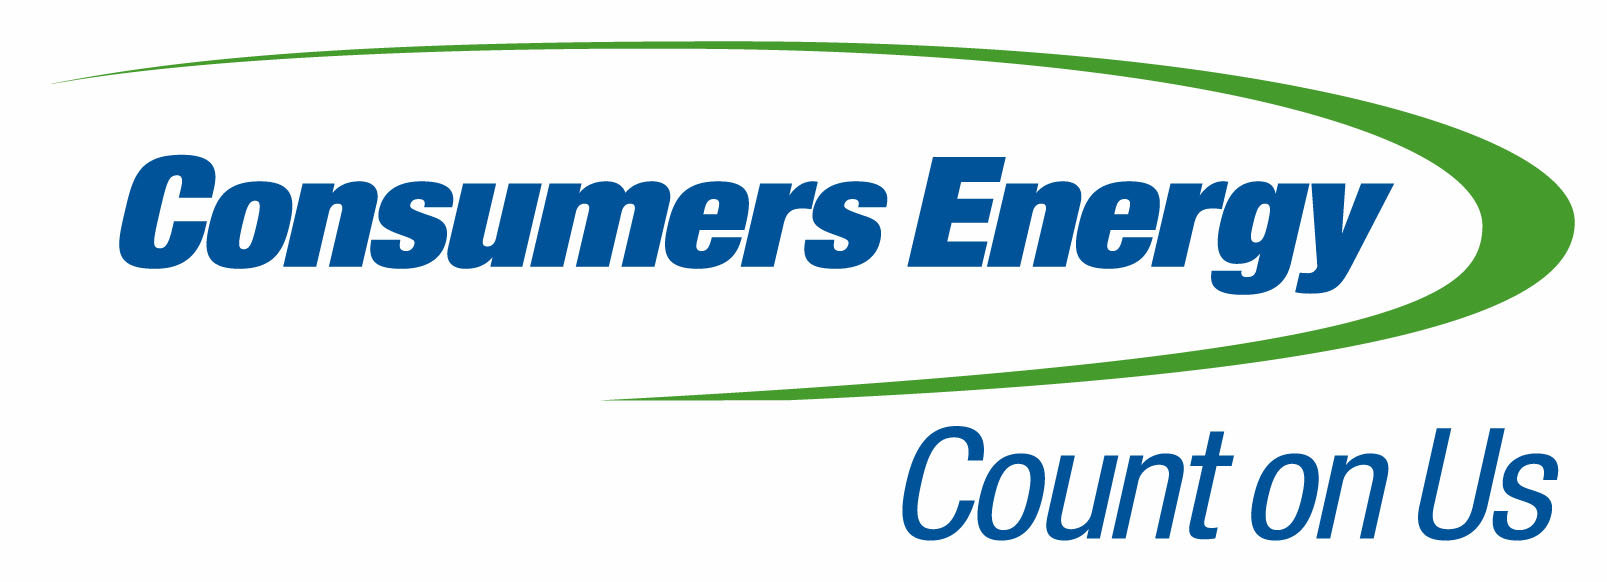 consumers-energy-logo (002)